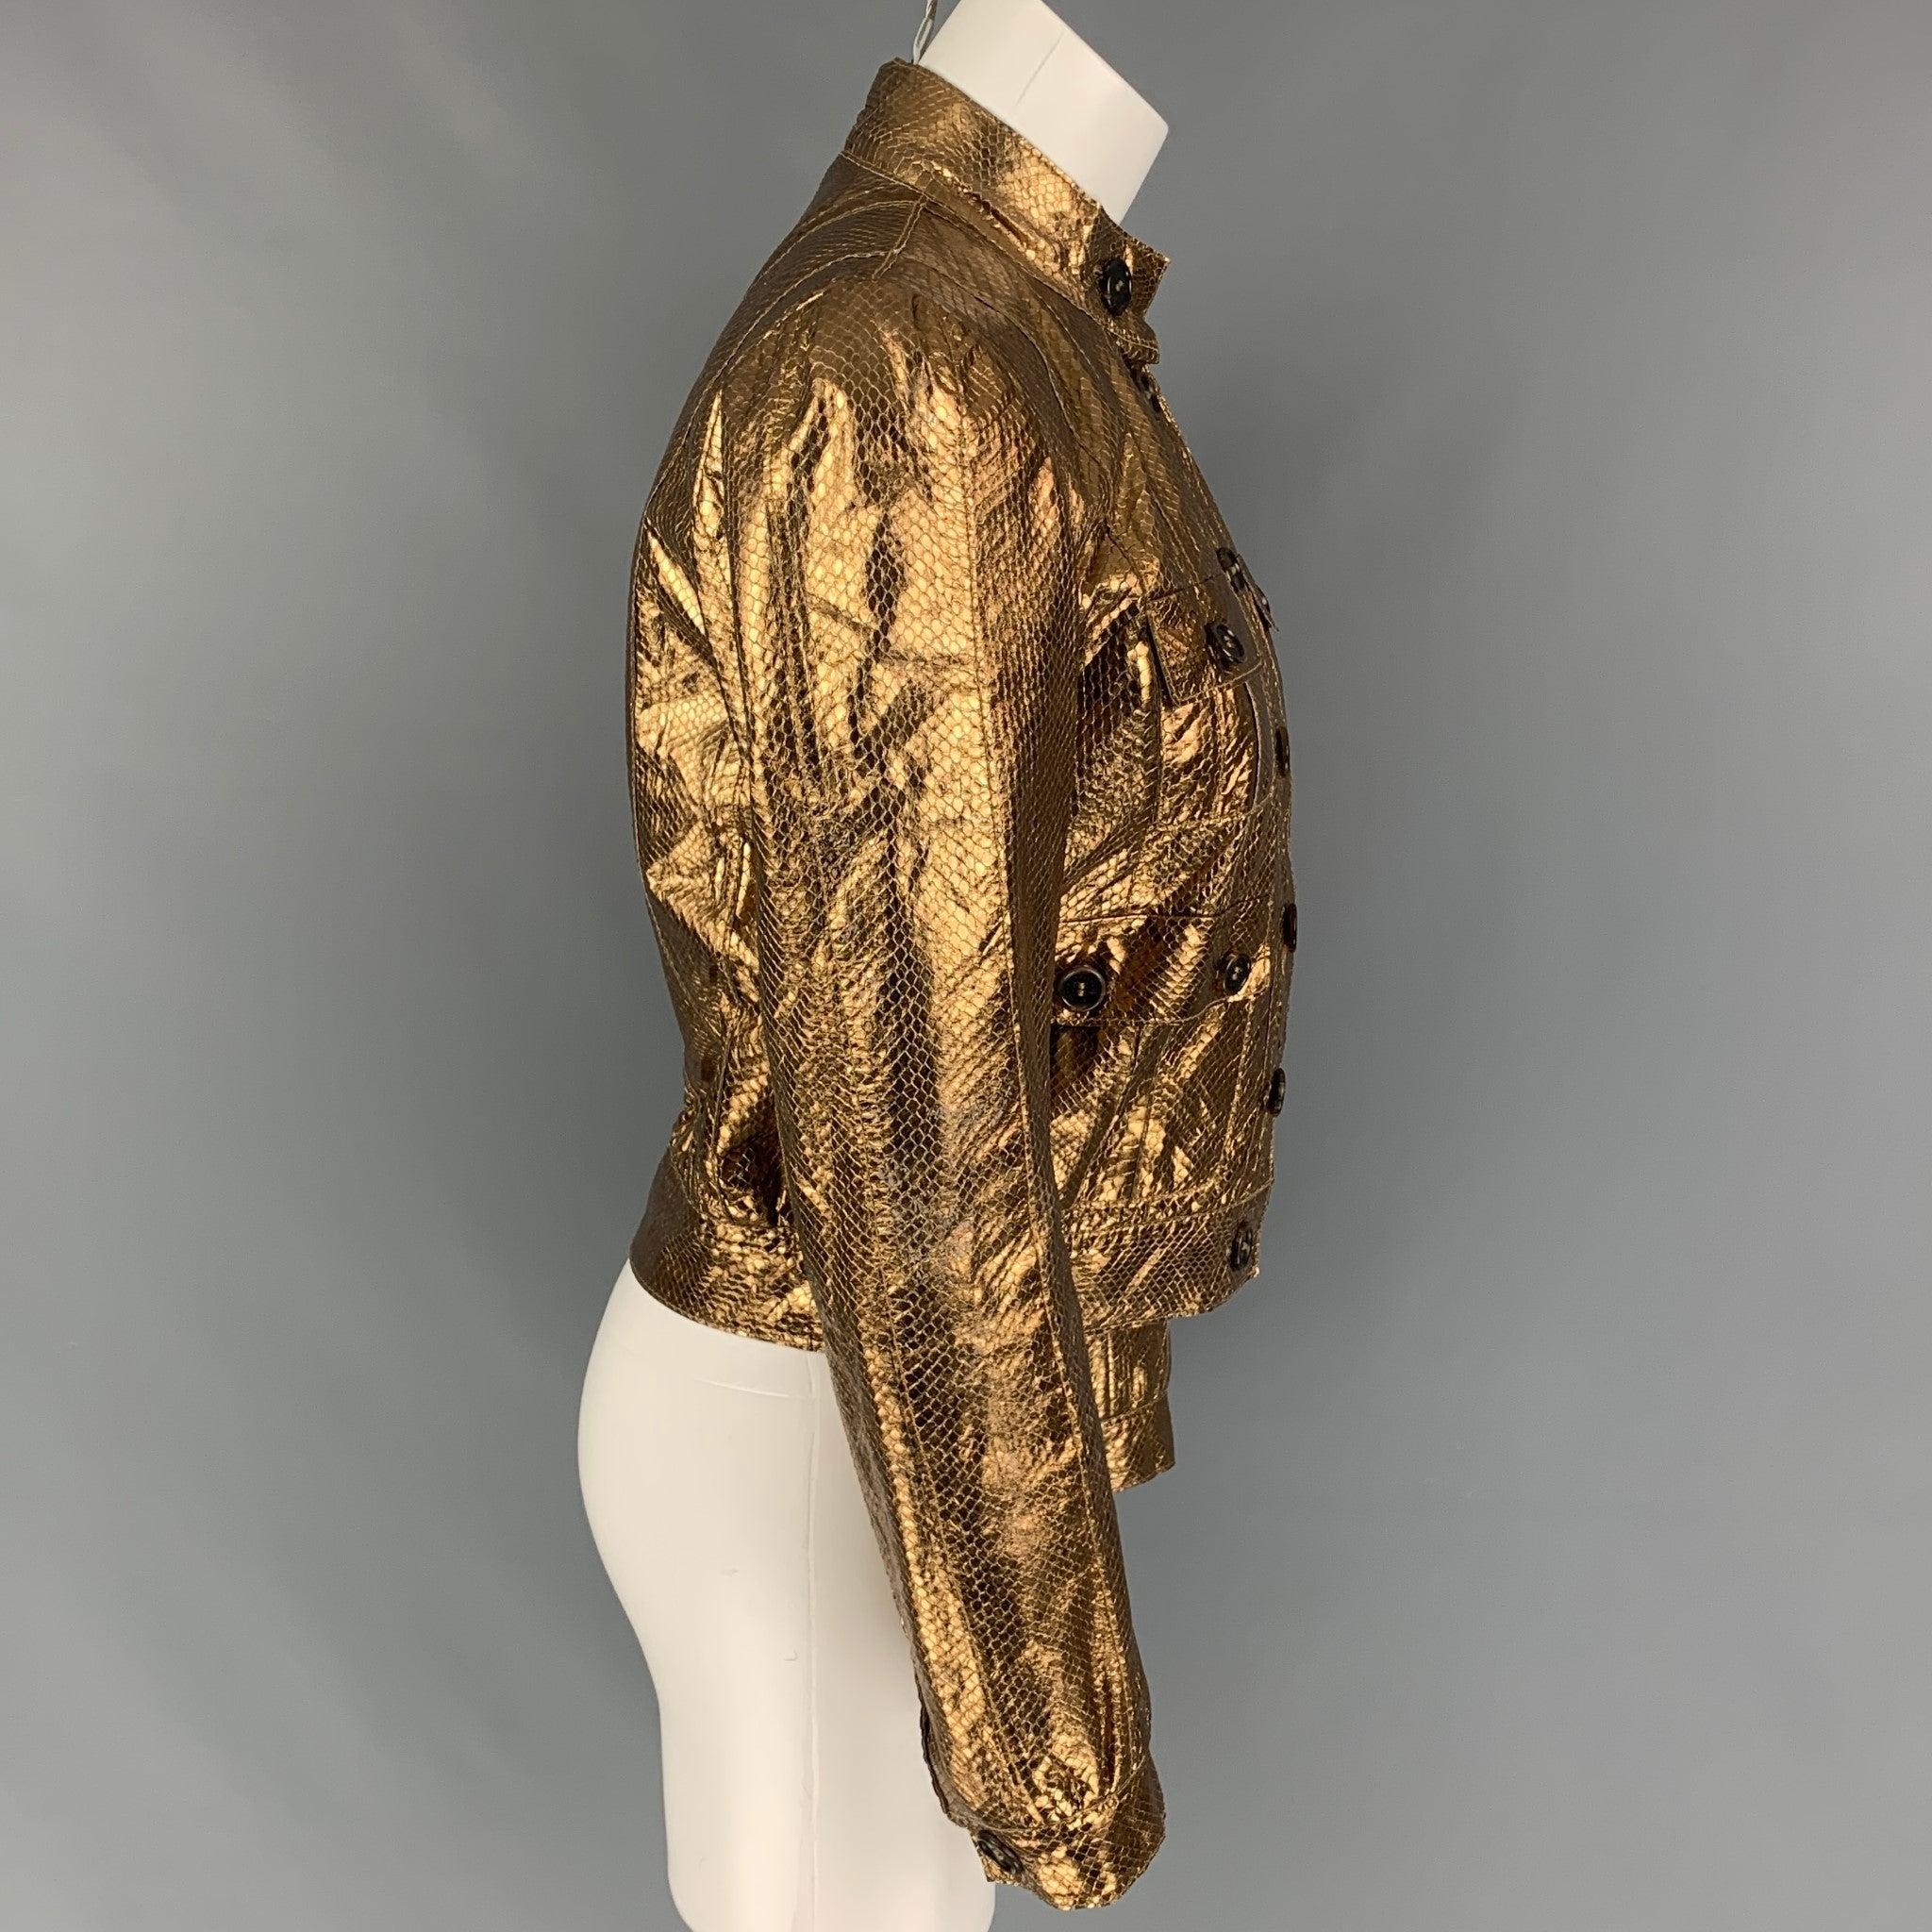 Die Jacke von MULBERRY aus goldfarbenem Schlangenleder ist kurz geschnitten, hat aufgesetzte Taschen und wird mit Knöpfen geschlossen.
Sehr gut
Gebrauchtes Zustand. 

Markiert:   UK 10 / USA 6 / EUR 40 

Abmessungen: 
 
Schultern: 15 Zoll